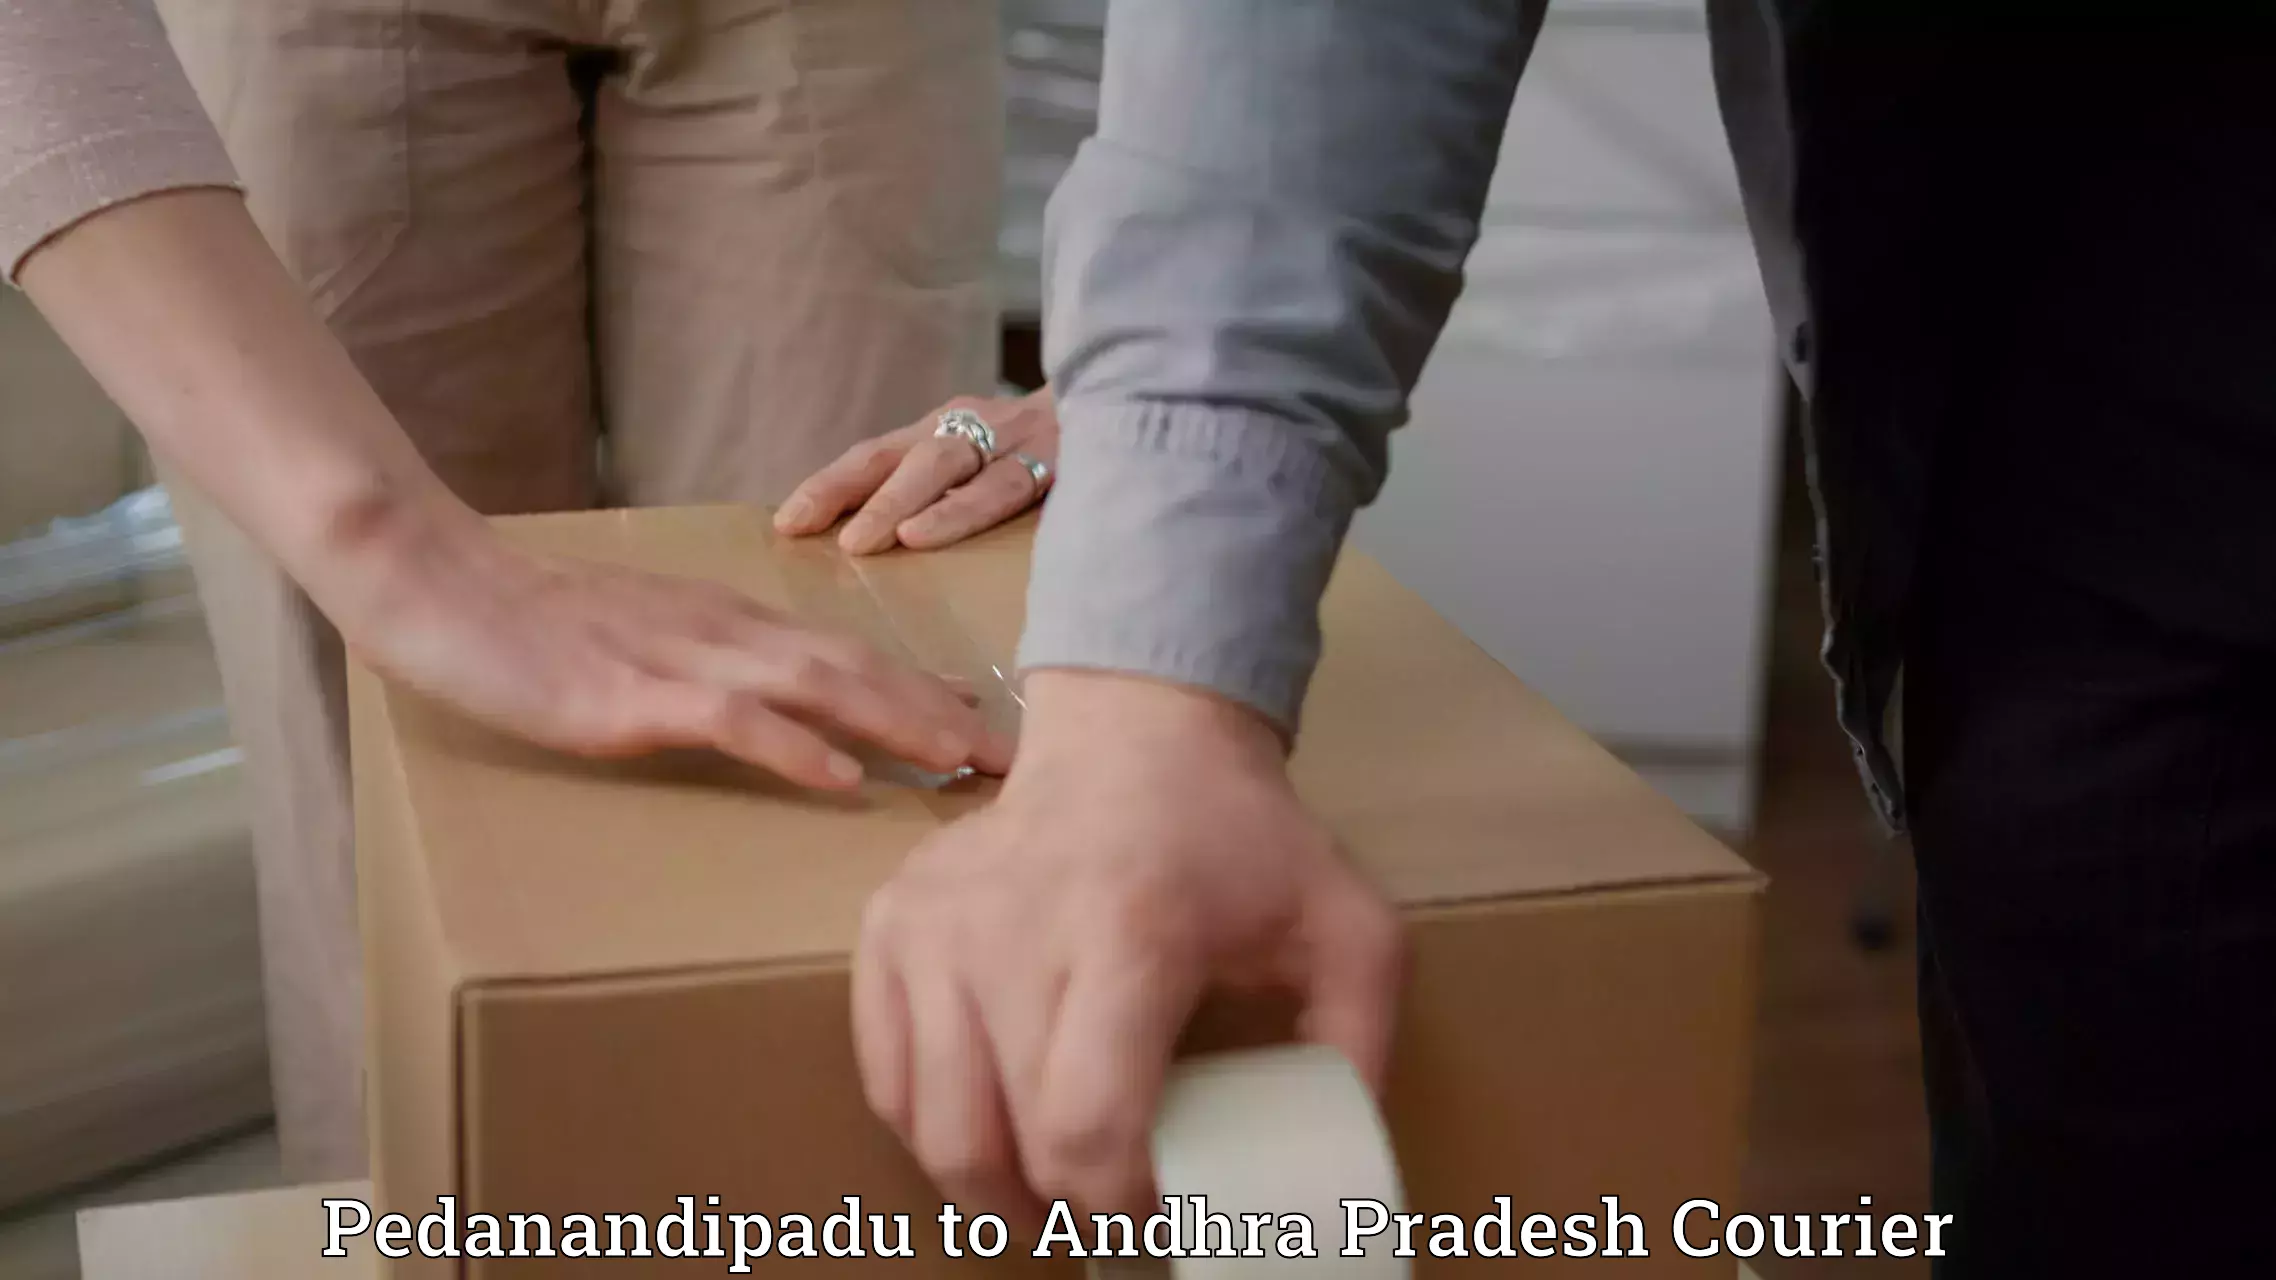 Express courier capabilities Pedanandipadu to Vidyanagar Nellore